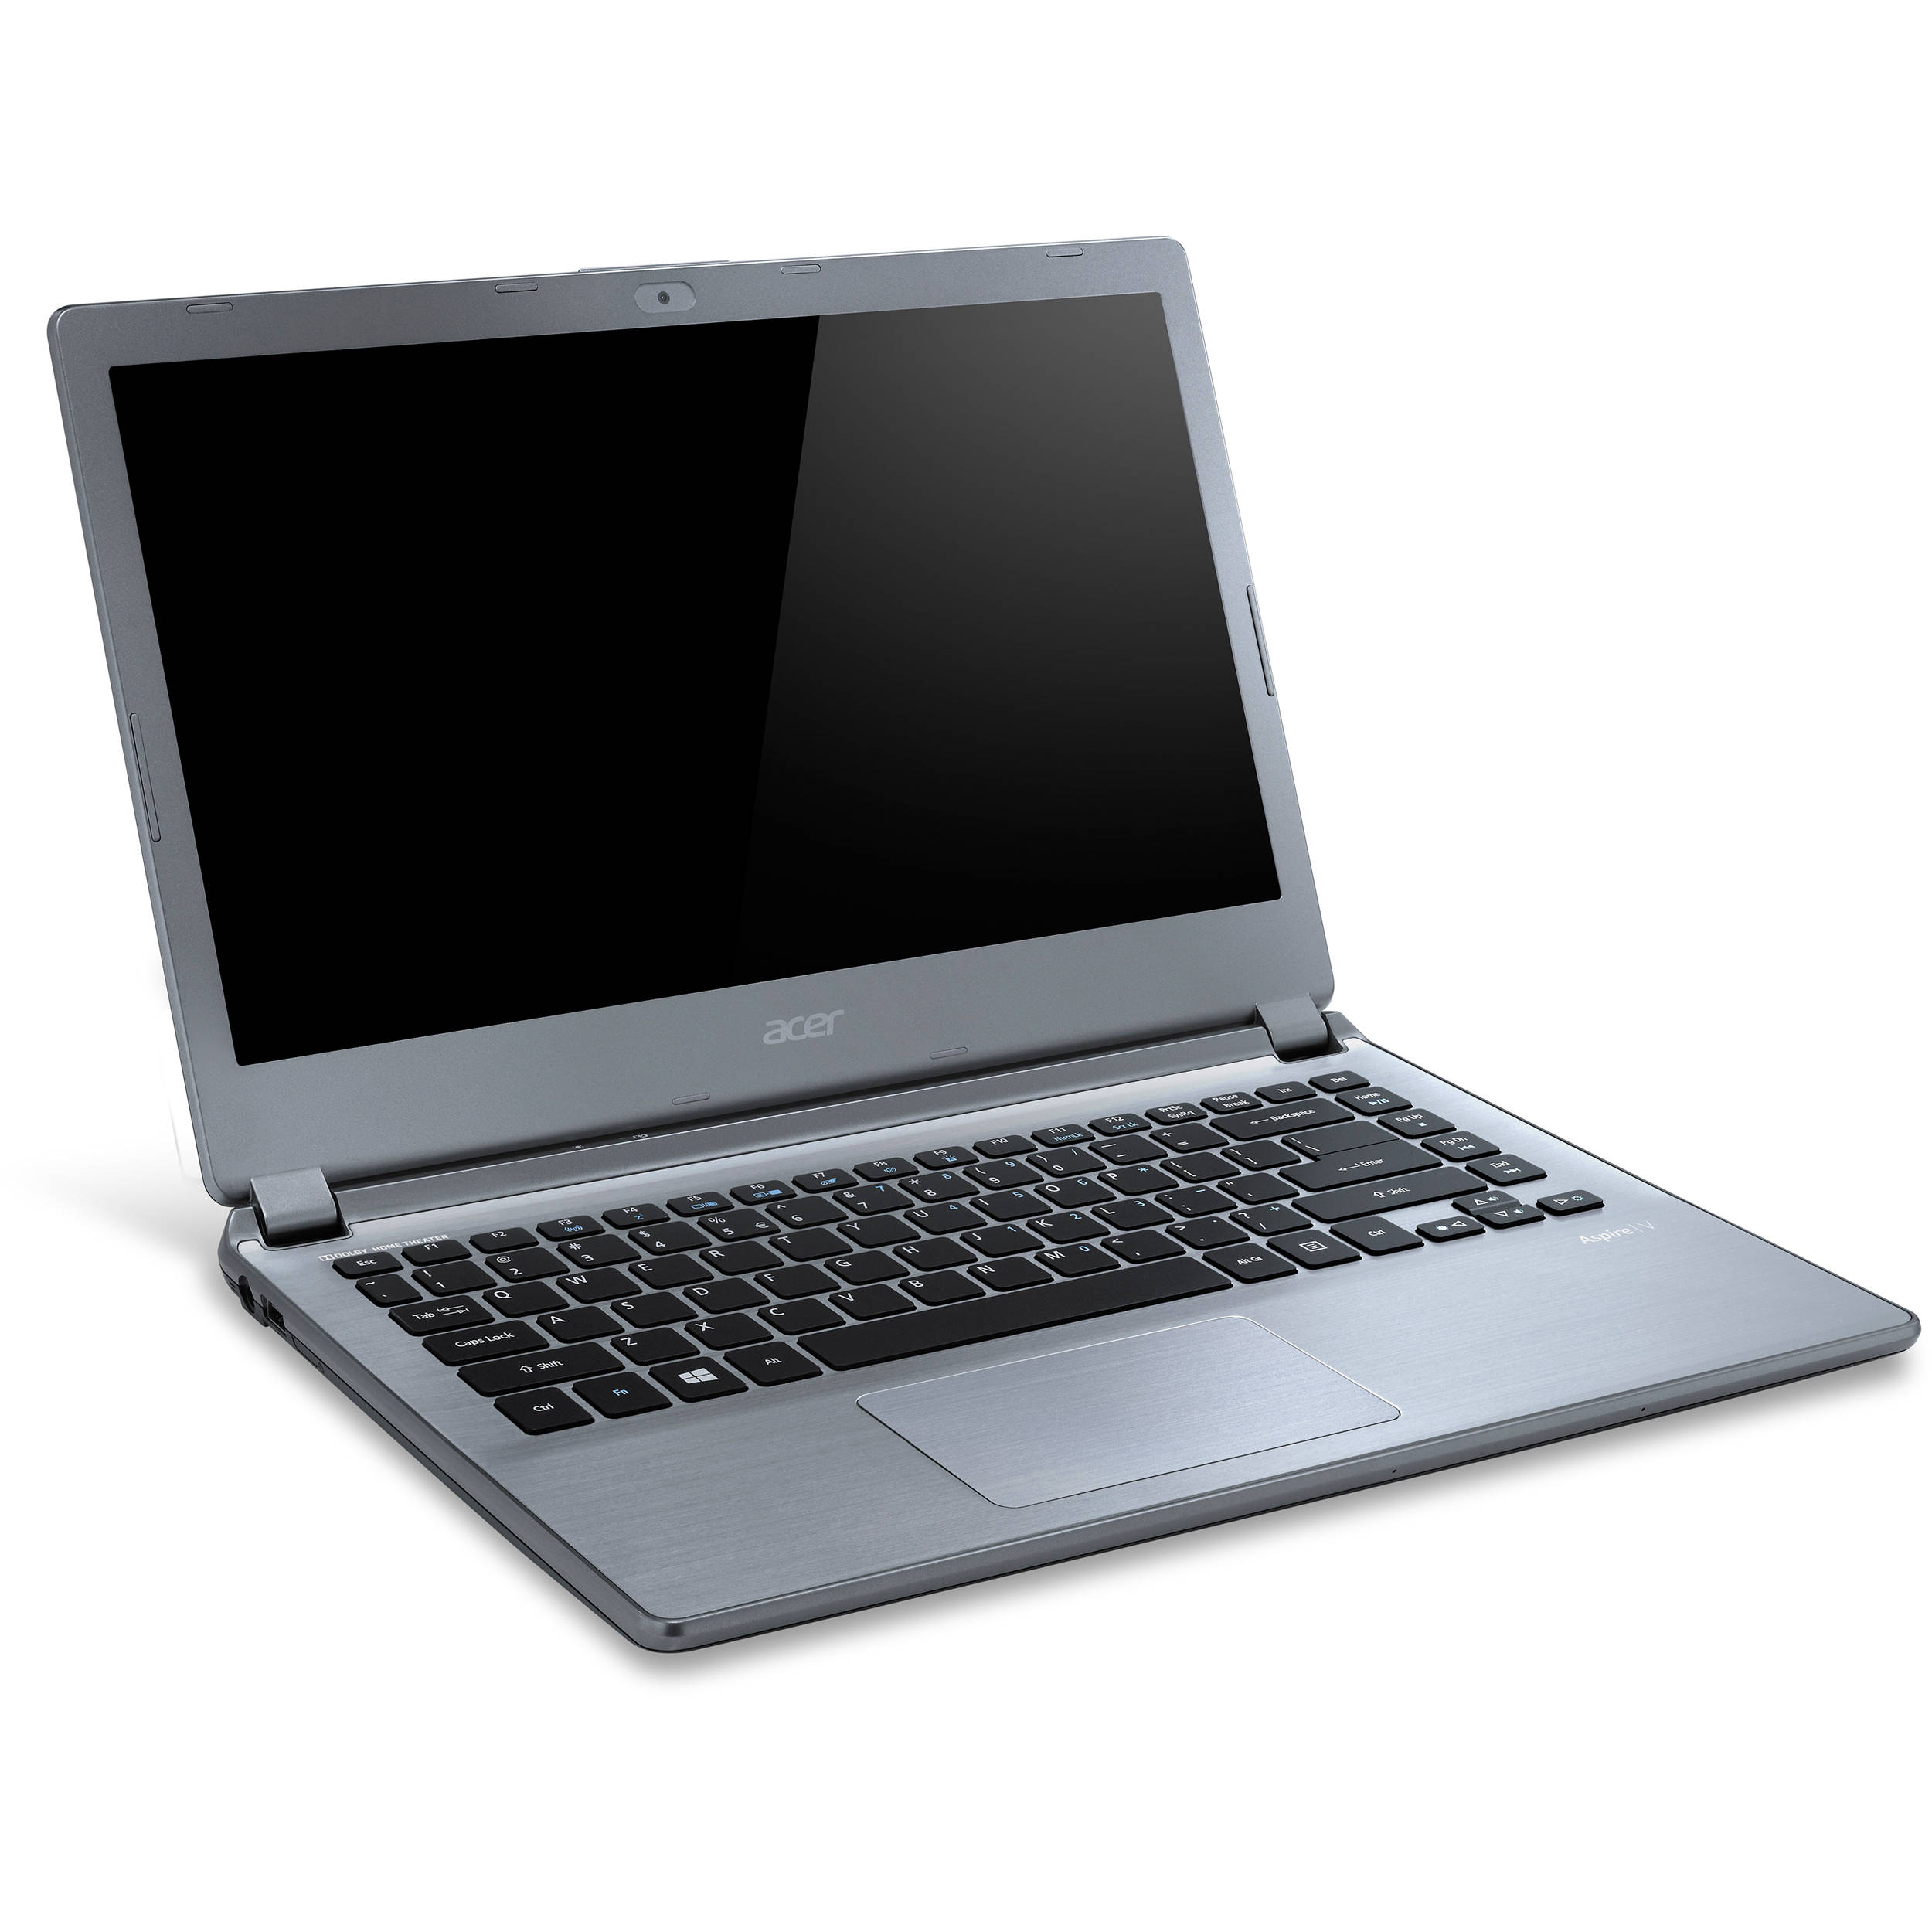 Acer Aspire V7-581G Notebook